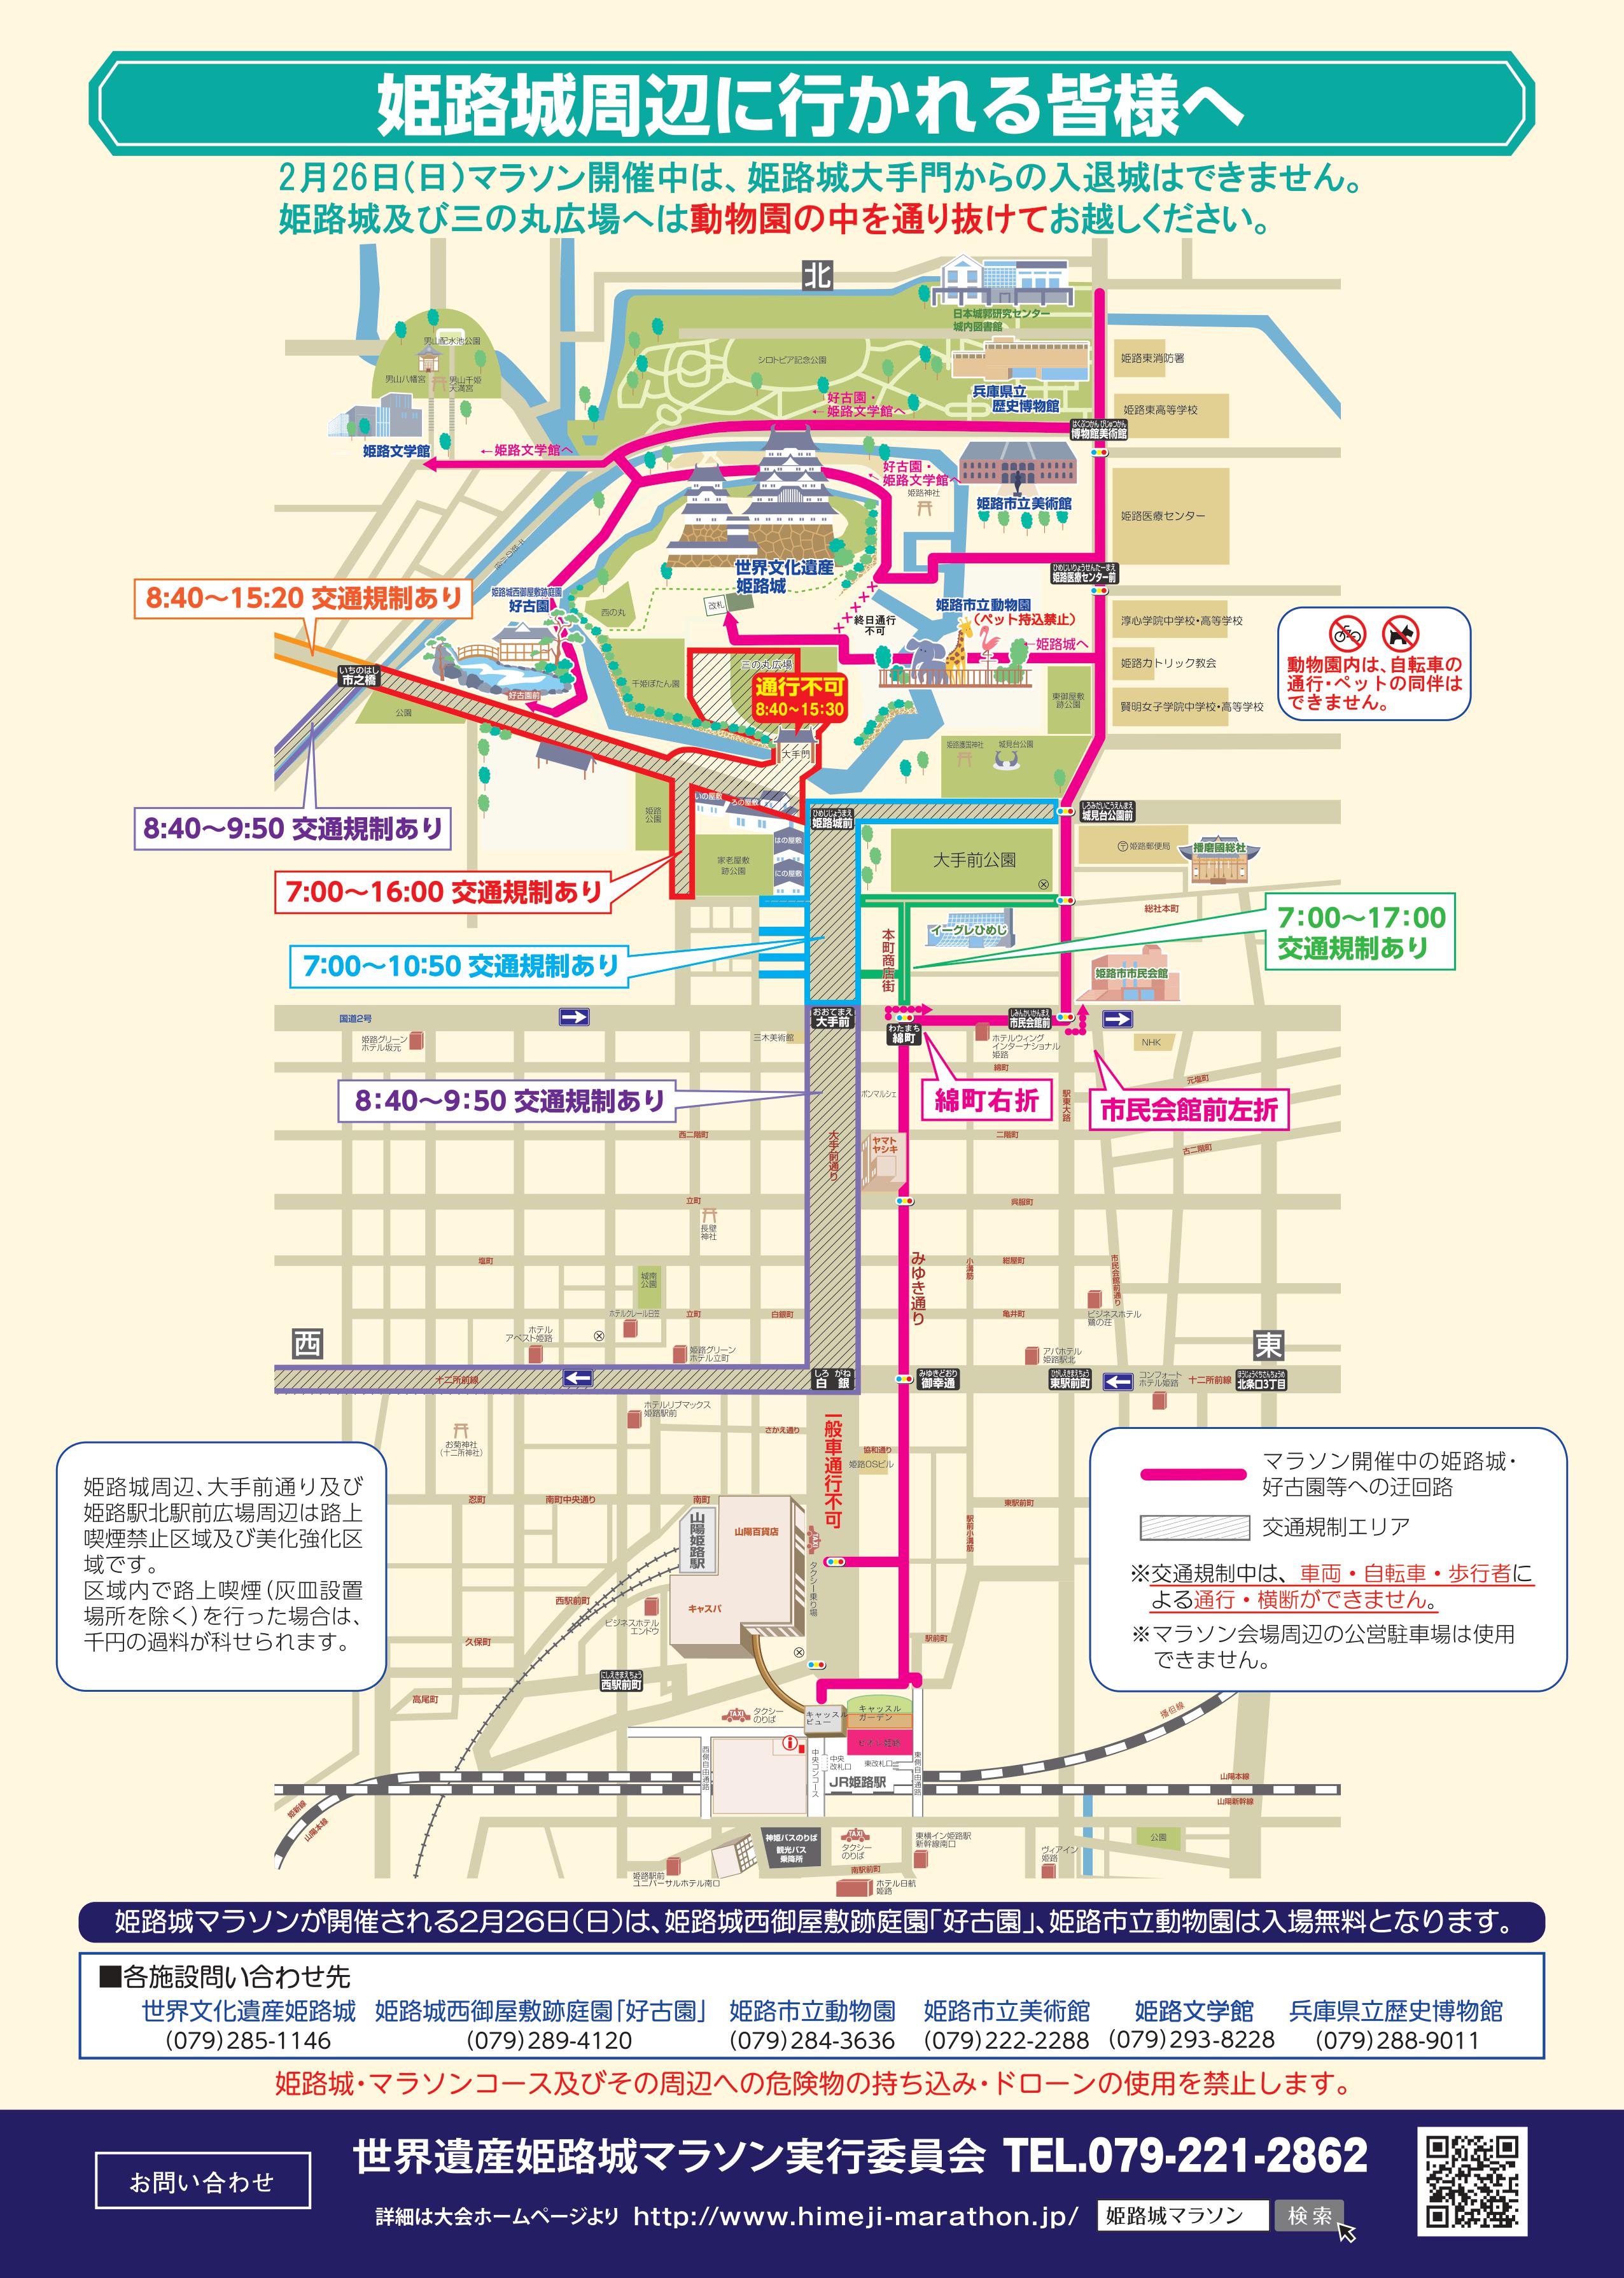 2/26姫路城マラソン交通規制情報